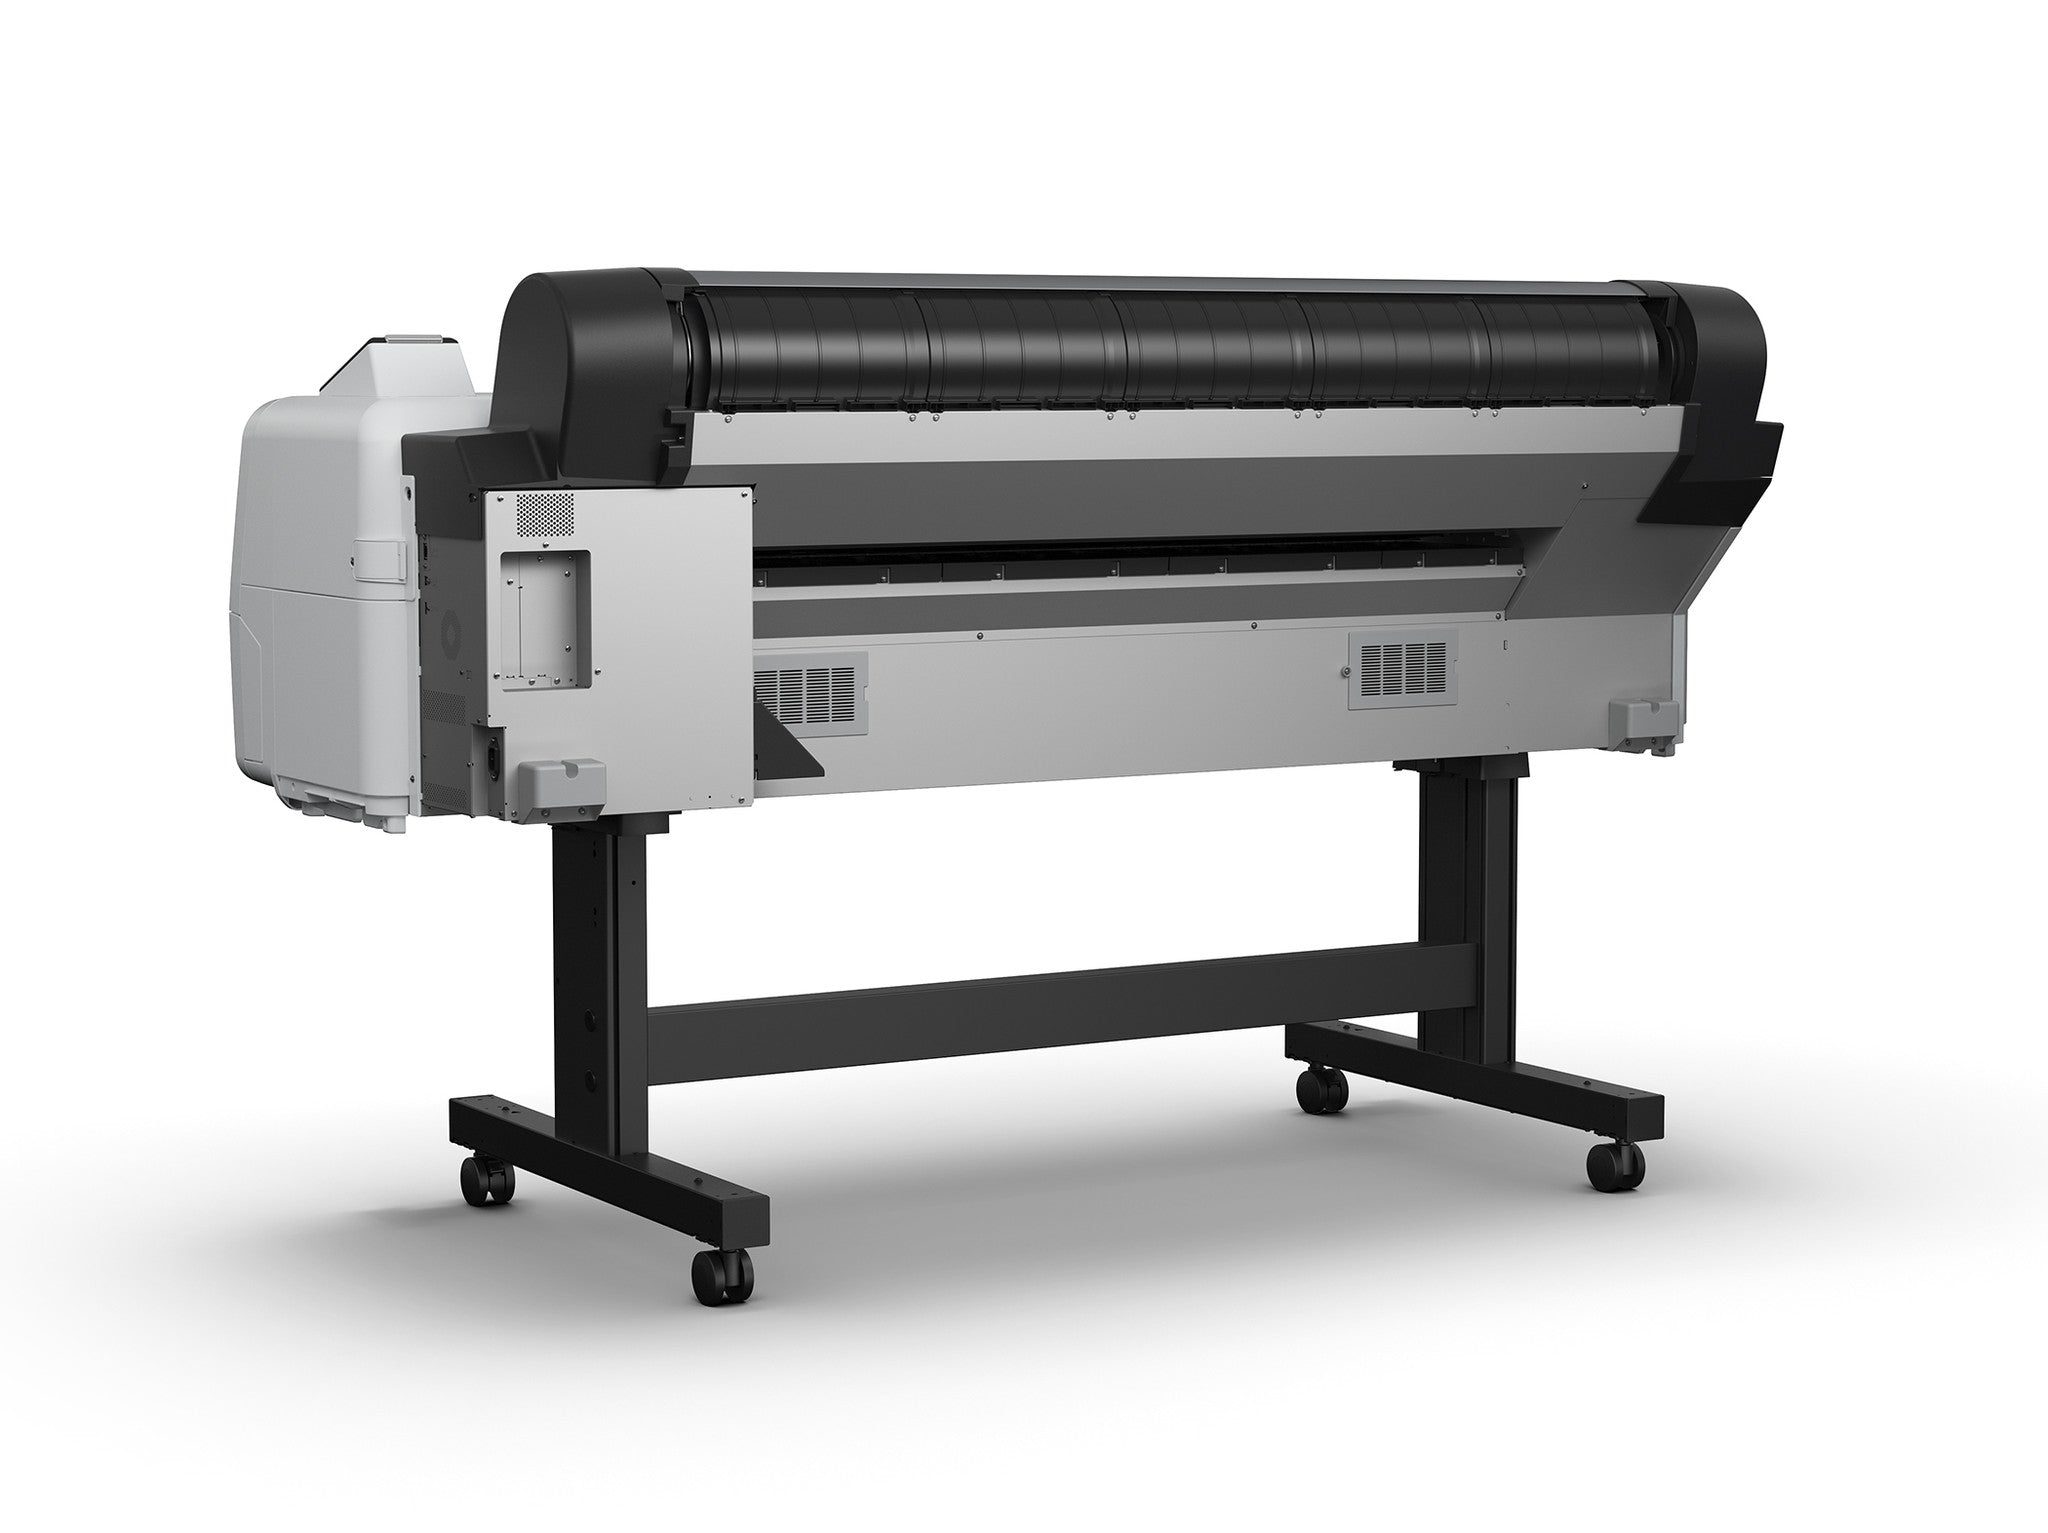 Epson SureColor P10000 44” Wide Format Printer, printers large format, Epson - Pictureline  - 2